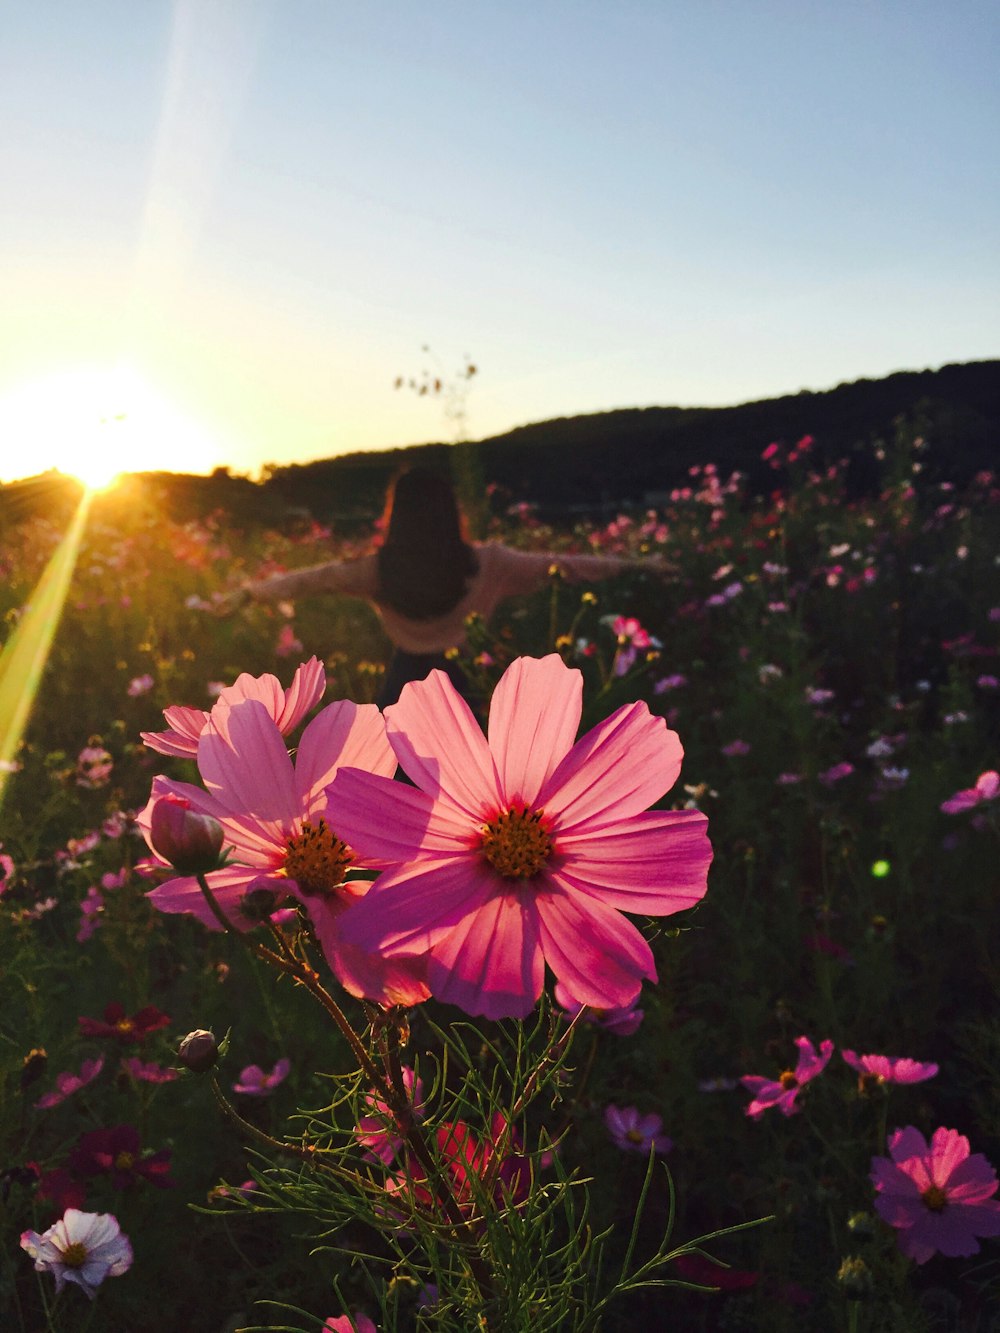 하얗고 푸른 하늘 아래 분홍색 꽃잎이 달린 꽃 옆에 서 있는 여자의 실루엣 사진